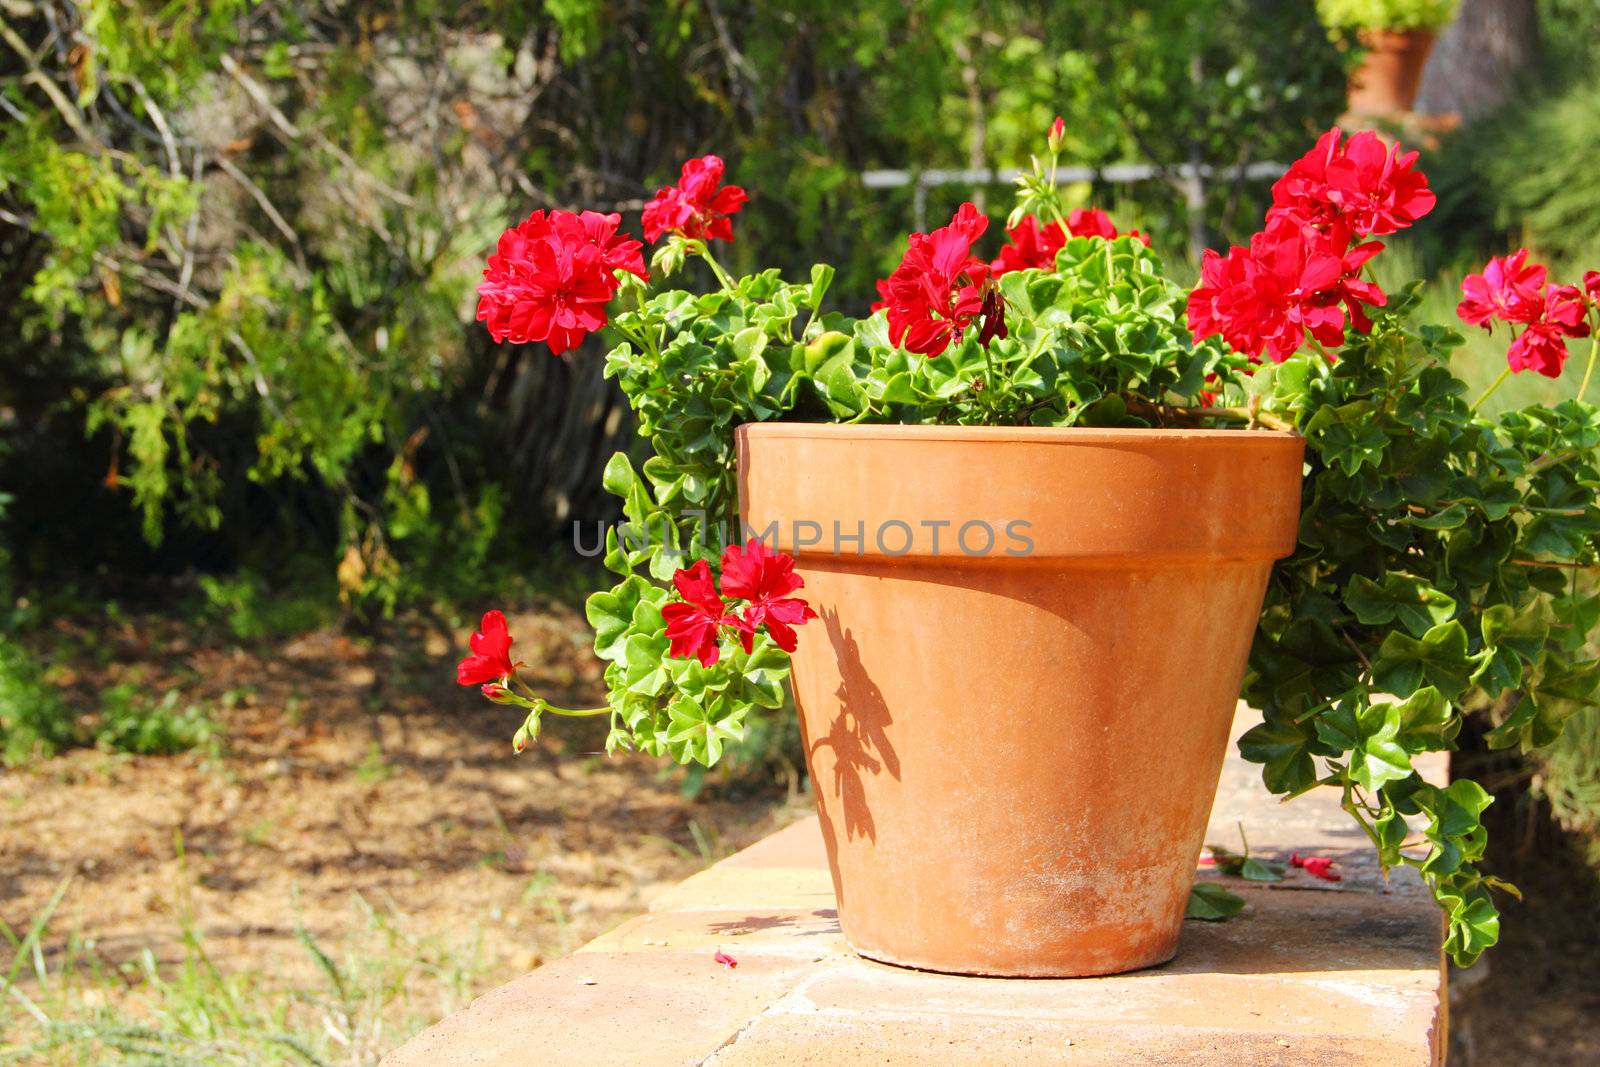 Red flower in pot standing in garden outdoors